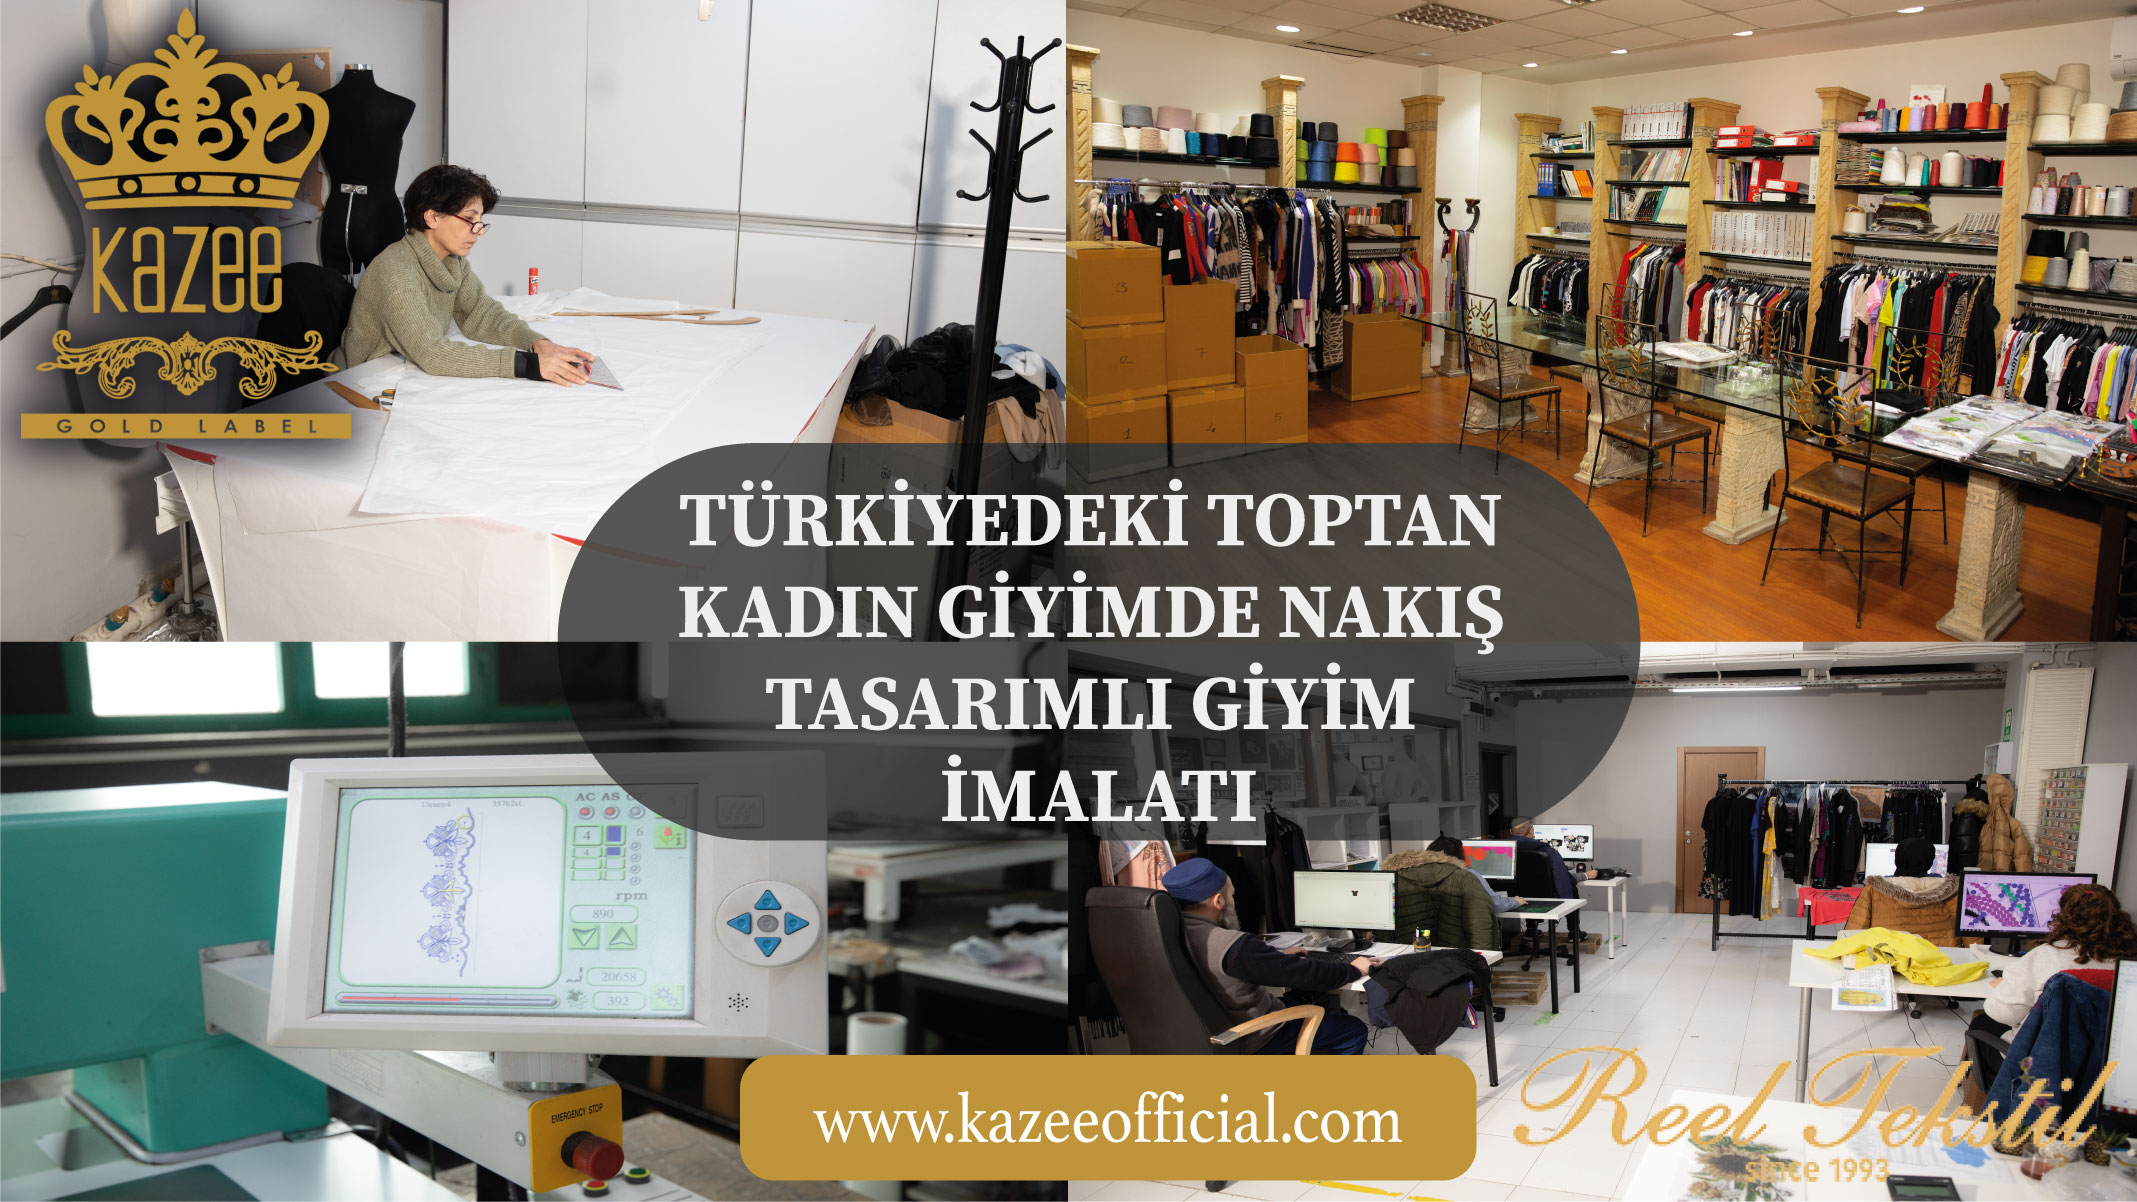 تطريز مُصمم لتصنيع الملابس بالجملة للنساء في تركيا